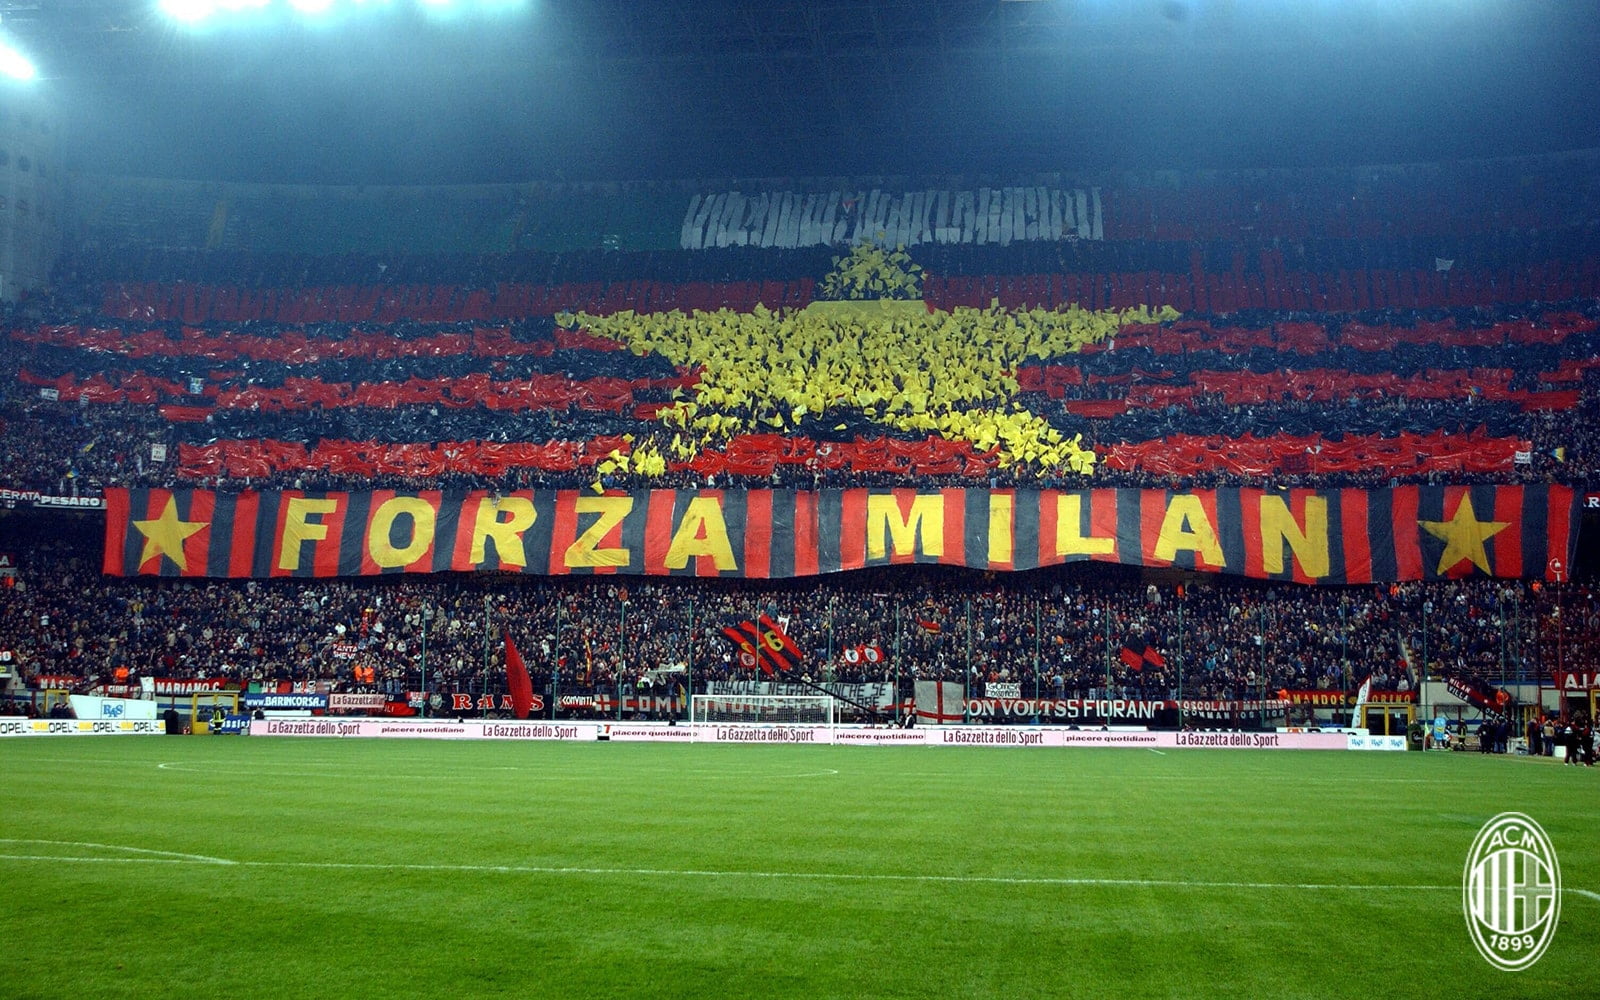 AC Milan - Spezia Calcio, 6 novembreà 20:45